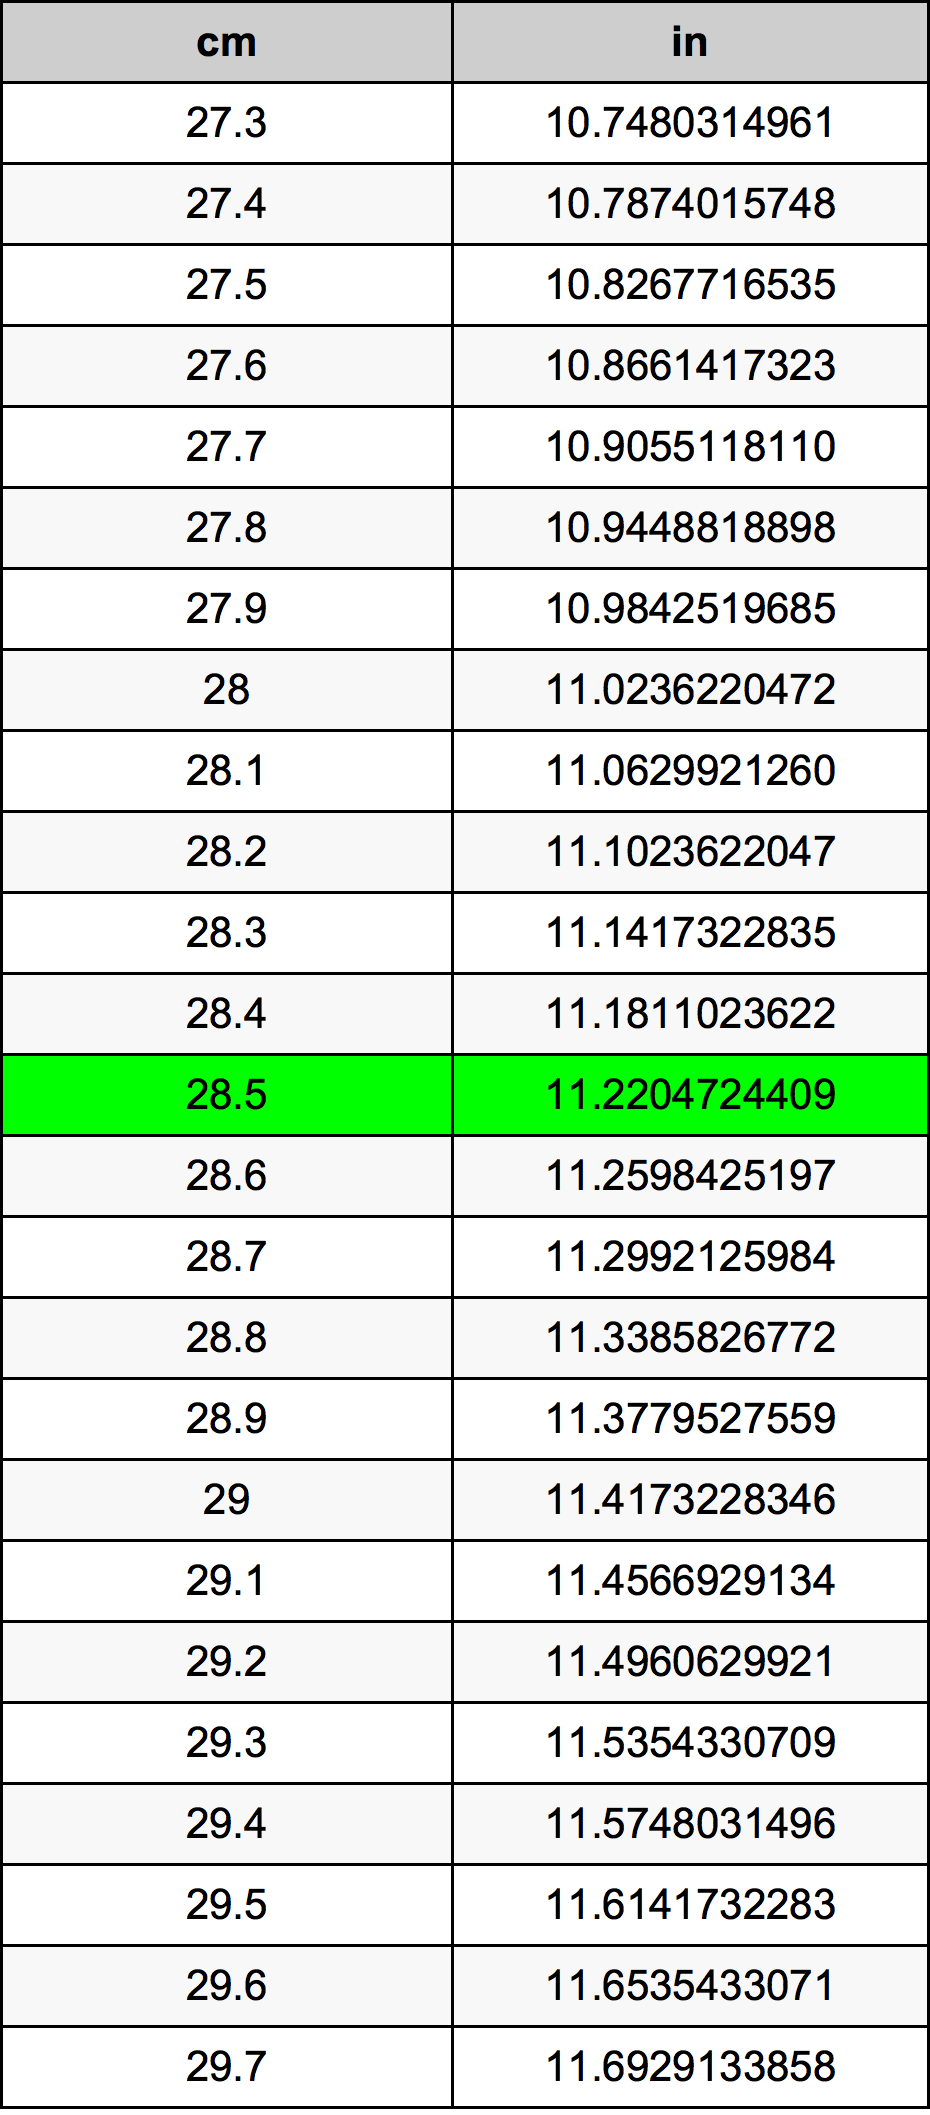 28.5 Centiméter átszámítási táblázat